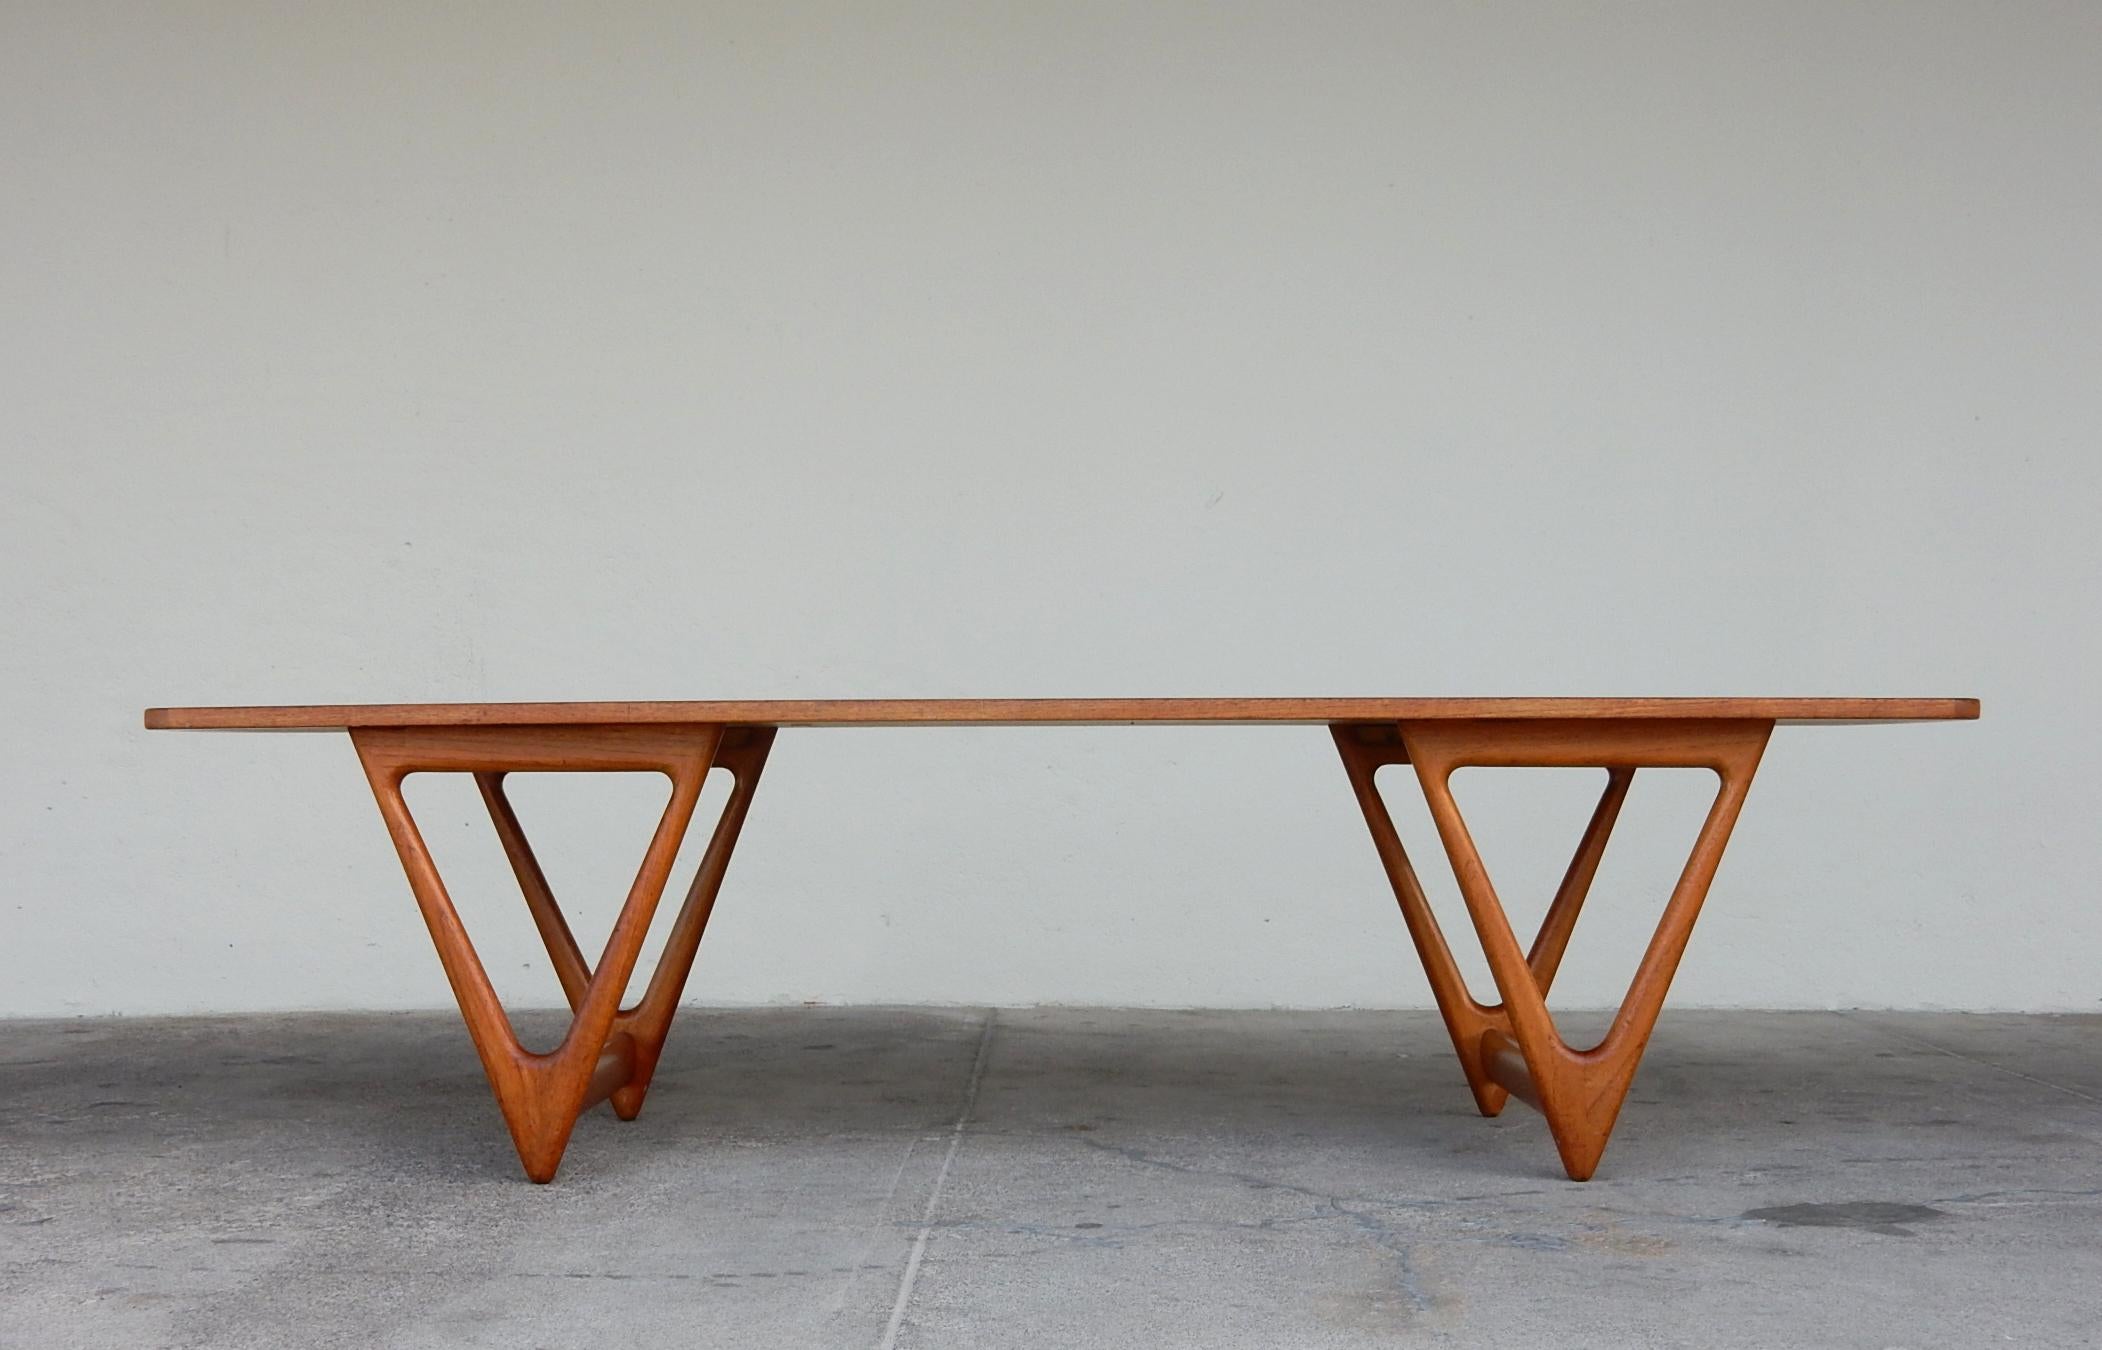 Incroyable grande table basse du designer de meubles danois Kurt Østervig (1912-1986).
Cette très grande table basse est entièrement originale, y compris la finition.
Il a été bien entretenu, sans dommages ni réparations. Le dessus est propre avec